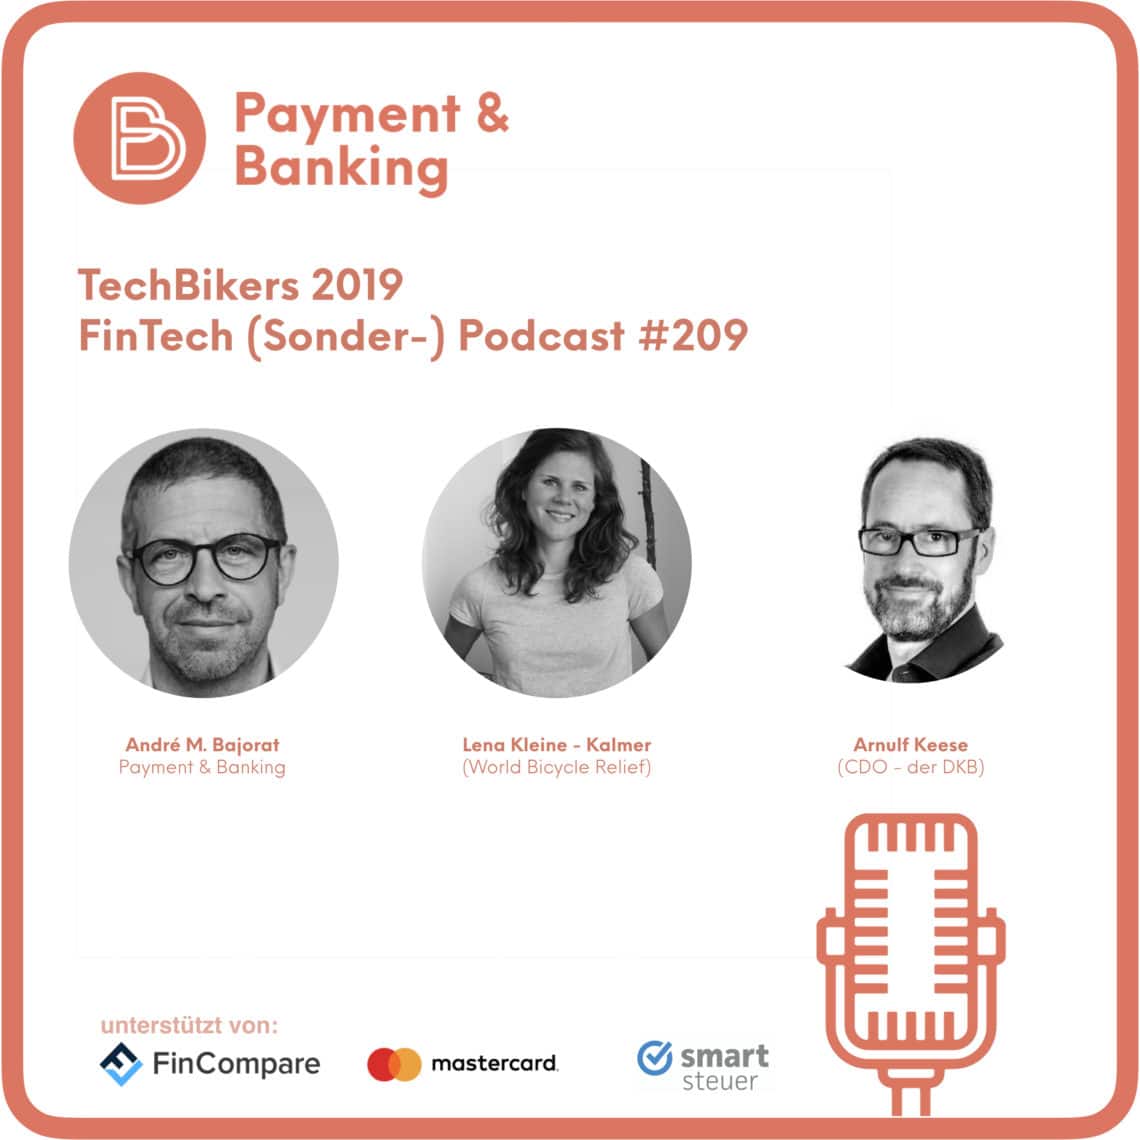 TechBikers 2019 - FinTech Podcast #209